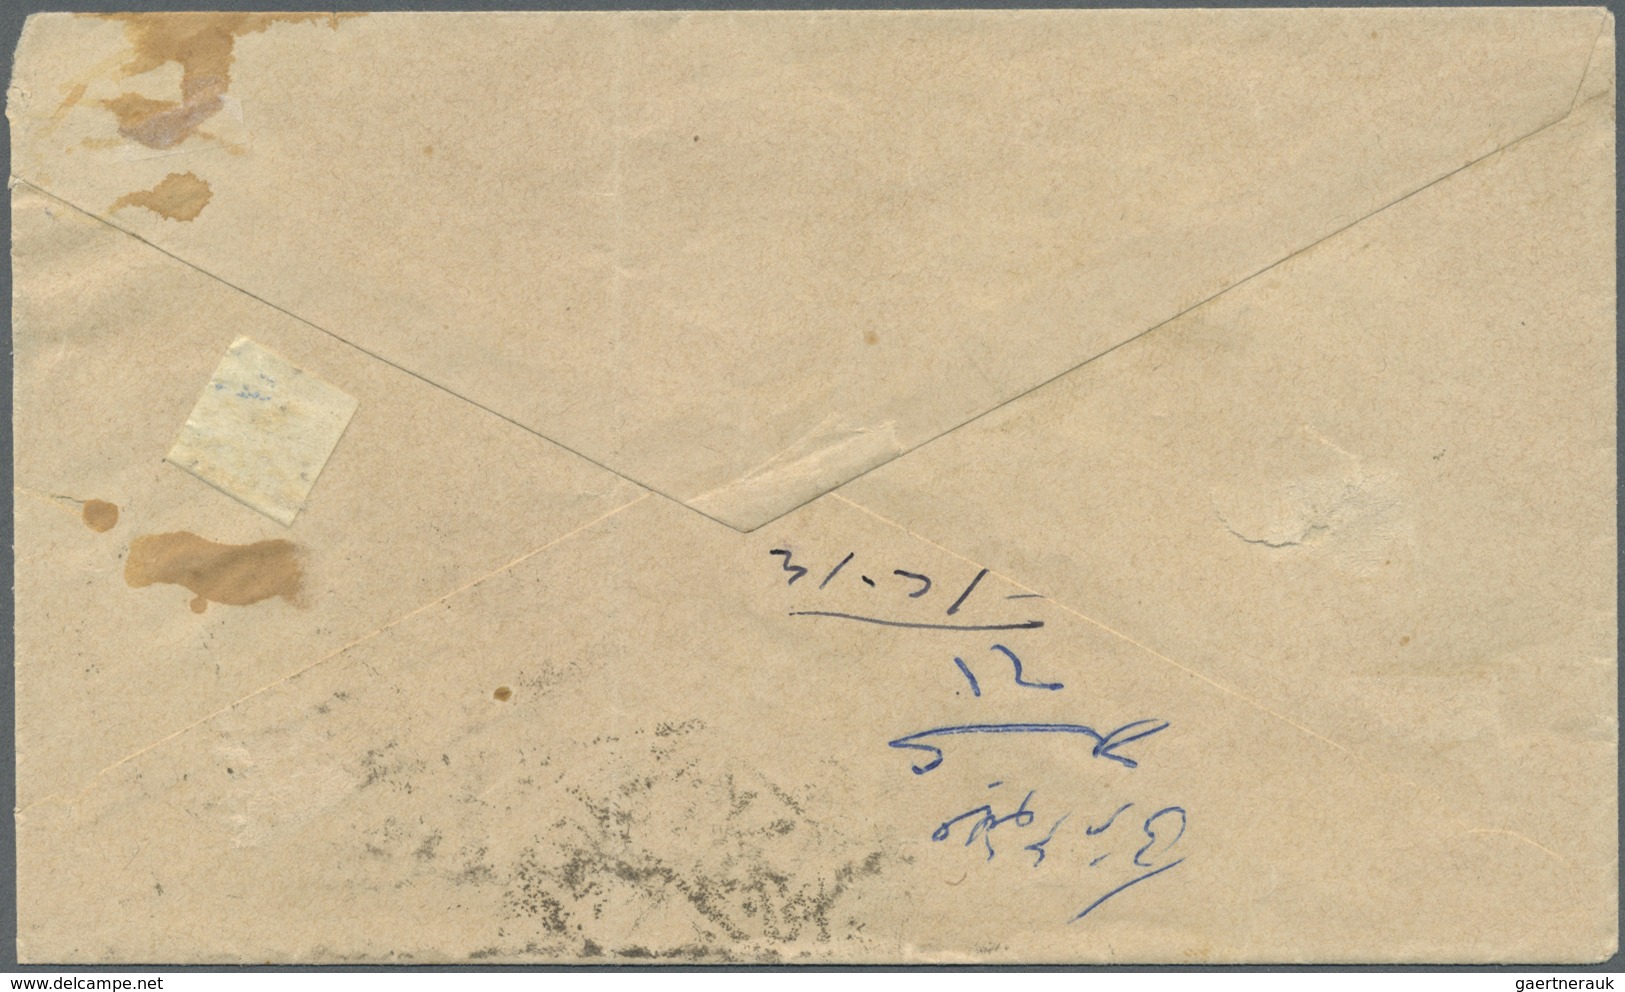 Br Saudi-Arabien - Stempel: 1916, Stampless Cover Tied By "MEKKE EL MUKEREME - 26/2/17- 1335" Cds. (Uex - Saudi Arabia